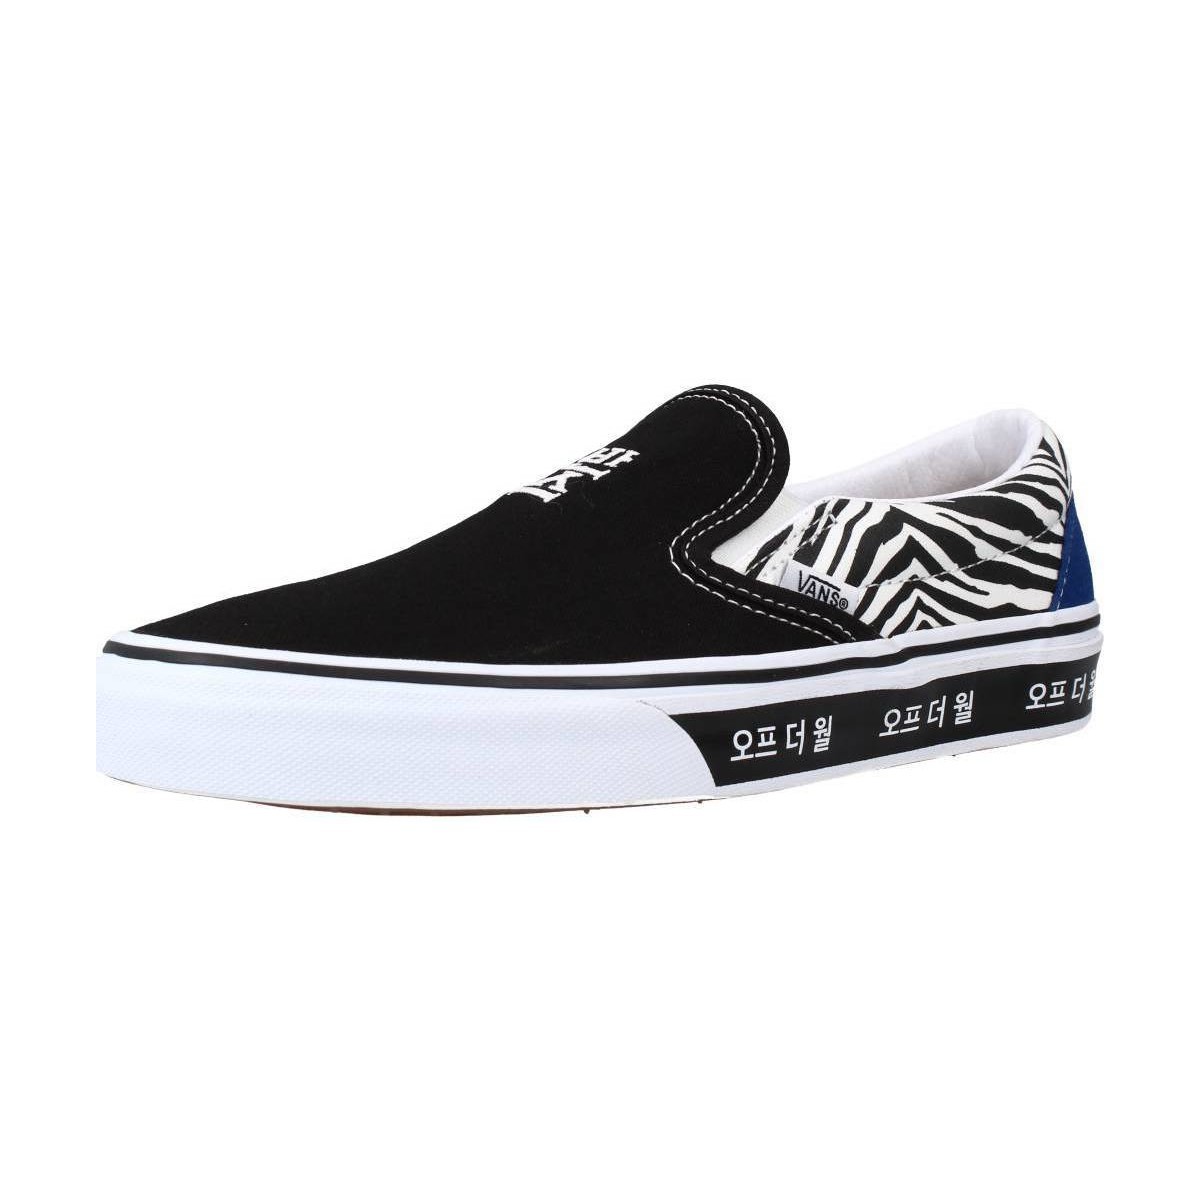 Παπούτσια Sneakers Vans UA CLASSIC SLIP-ON Black